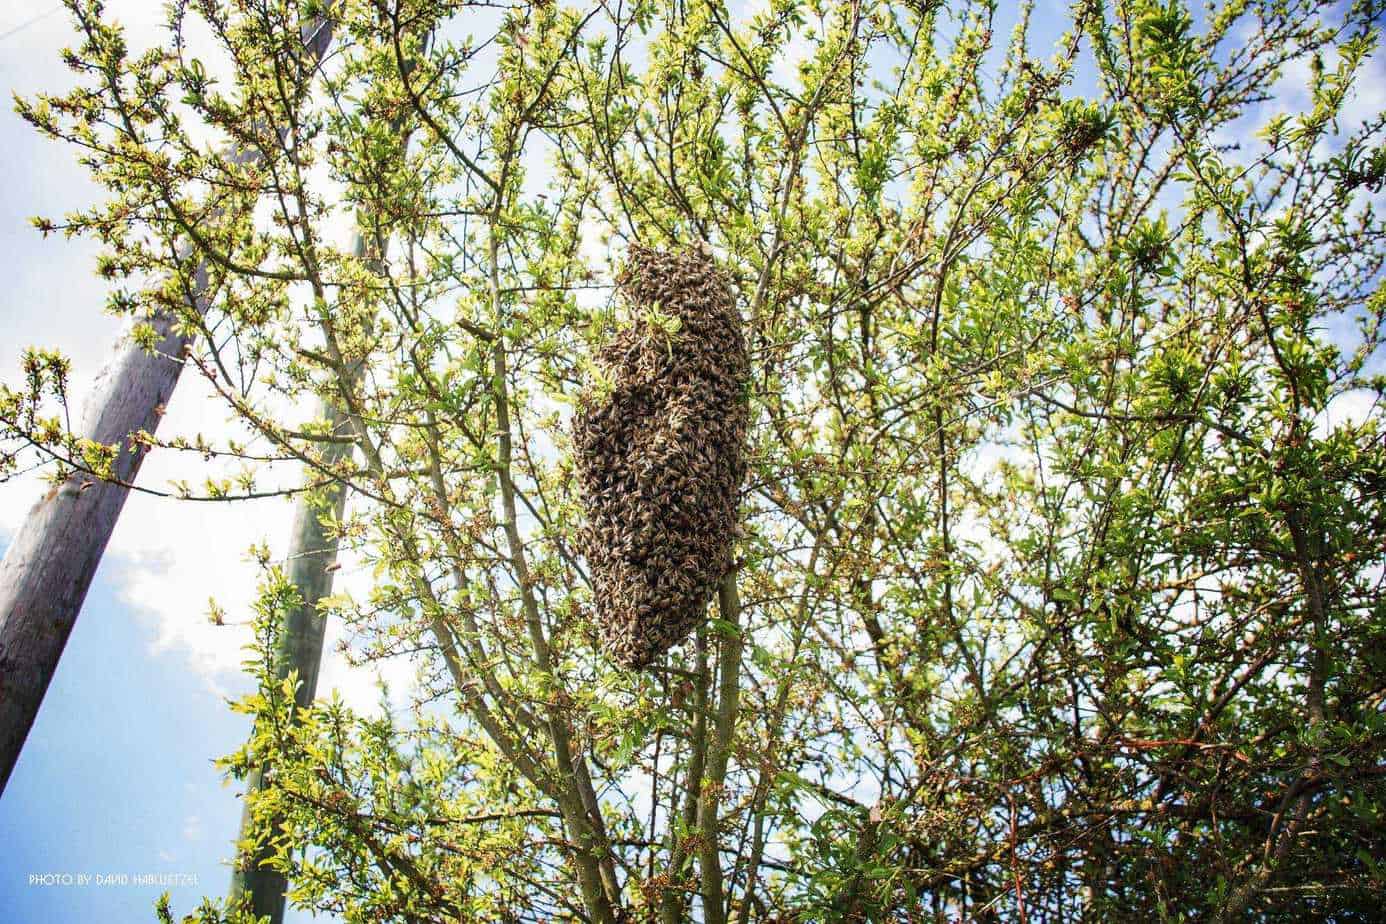 Bienenschwarm, Honigbiene, Honigbienen, Bienenvolk